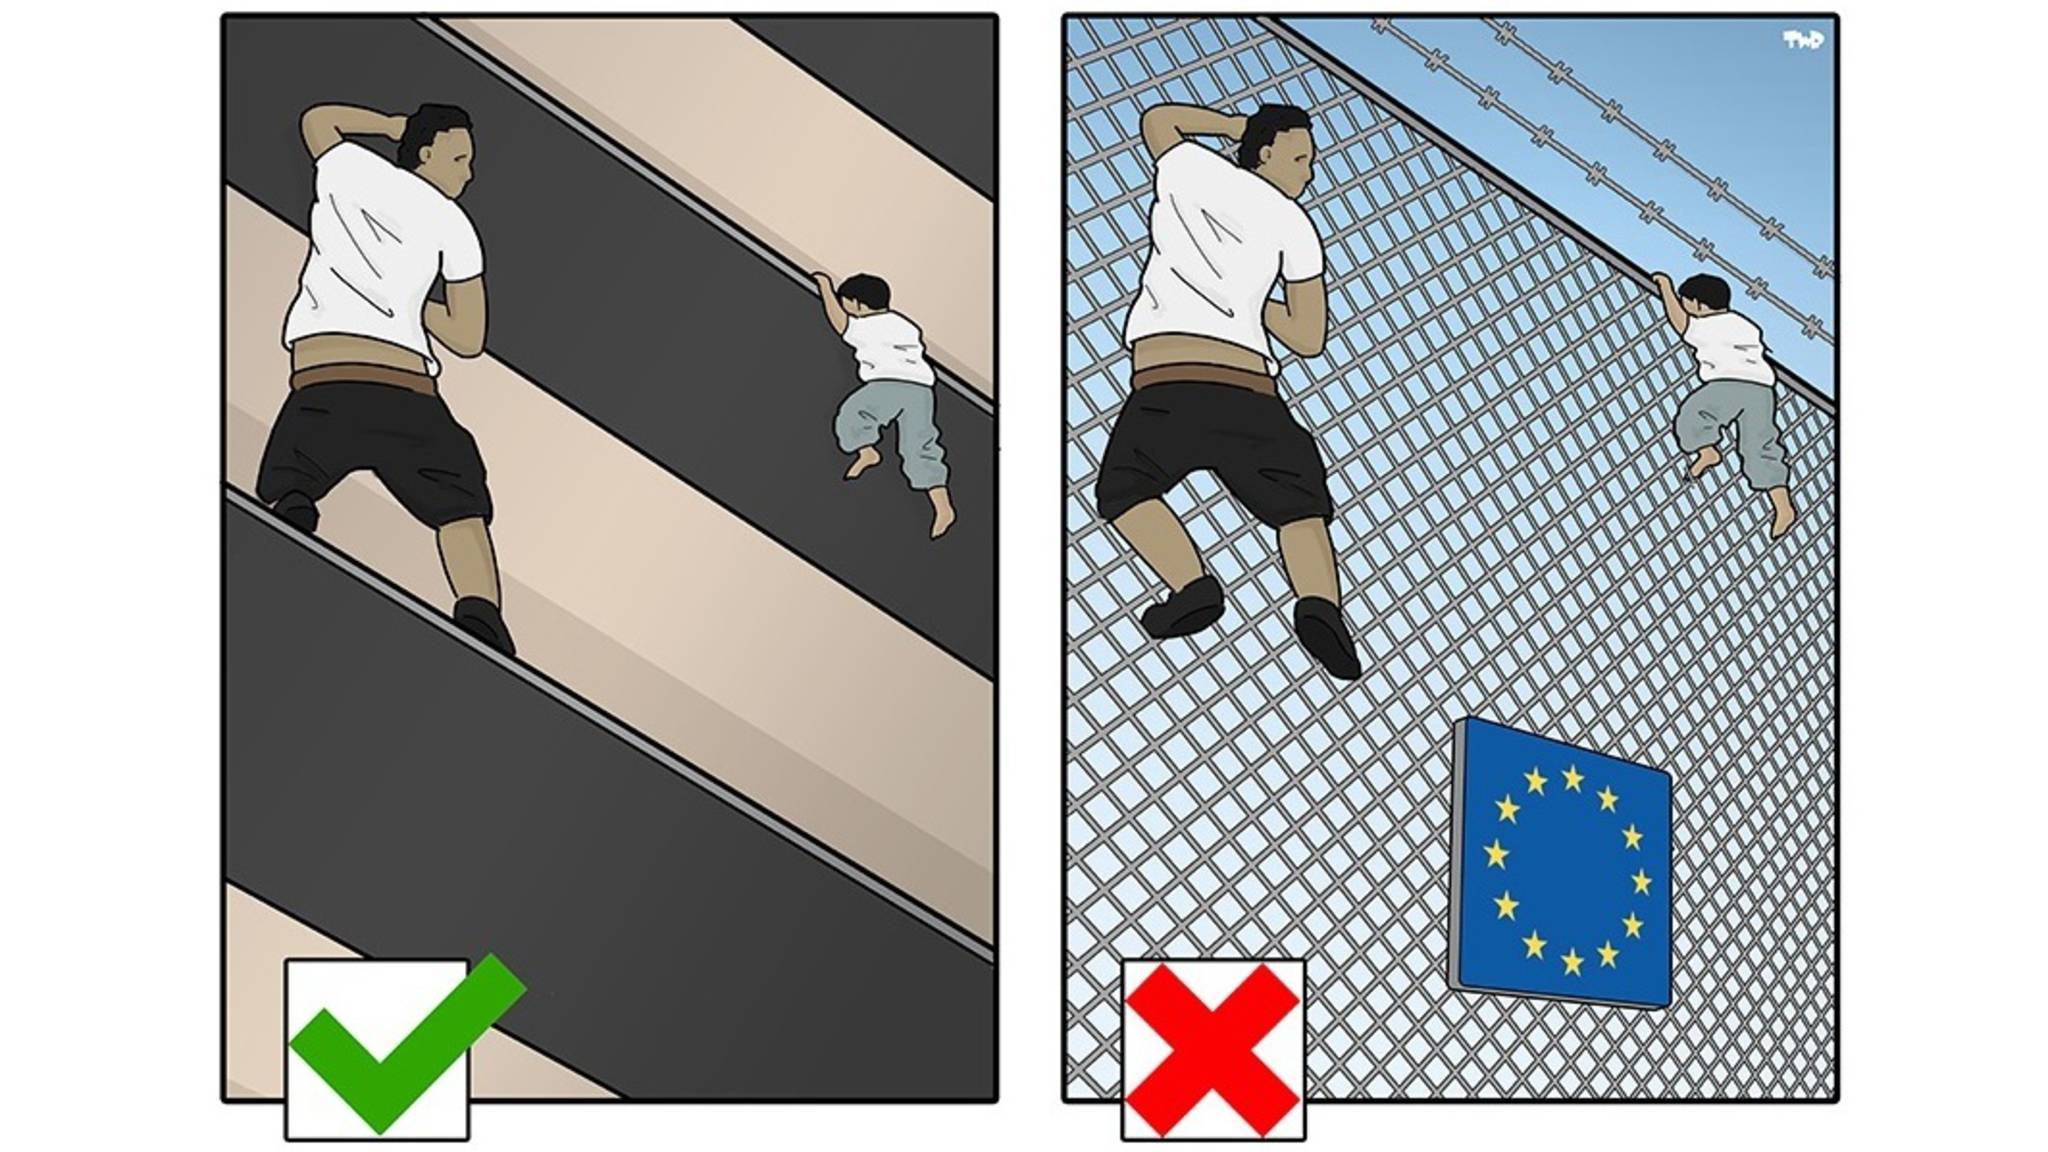 'Good migrant, bad migrant?' Cartoon by Tjeerd Royaards